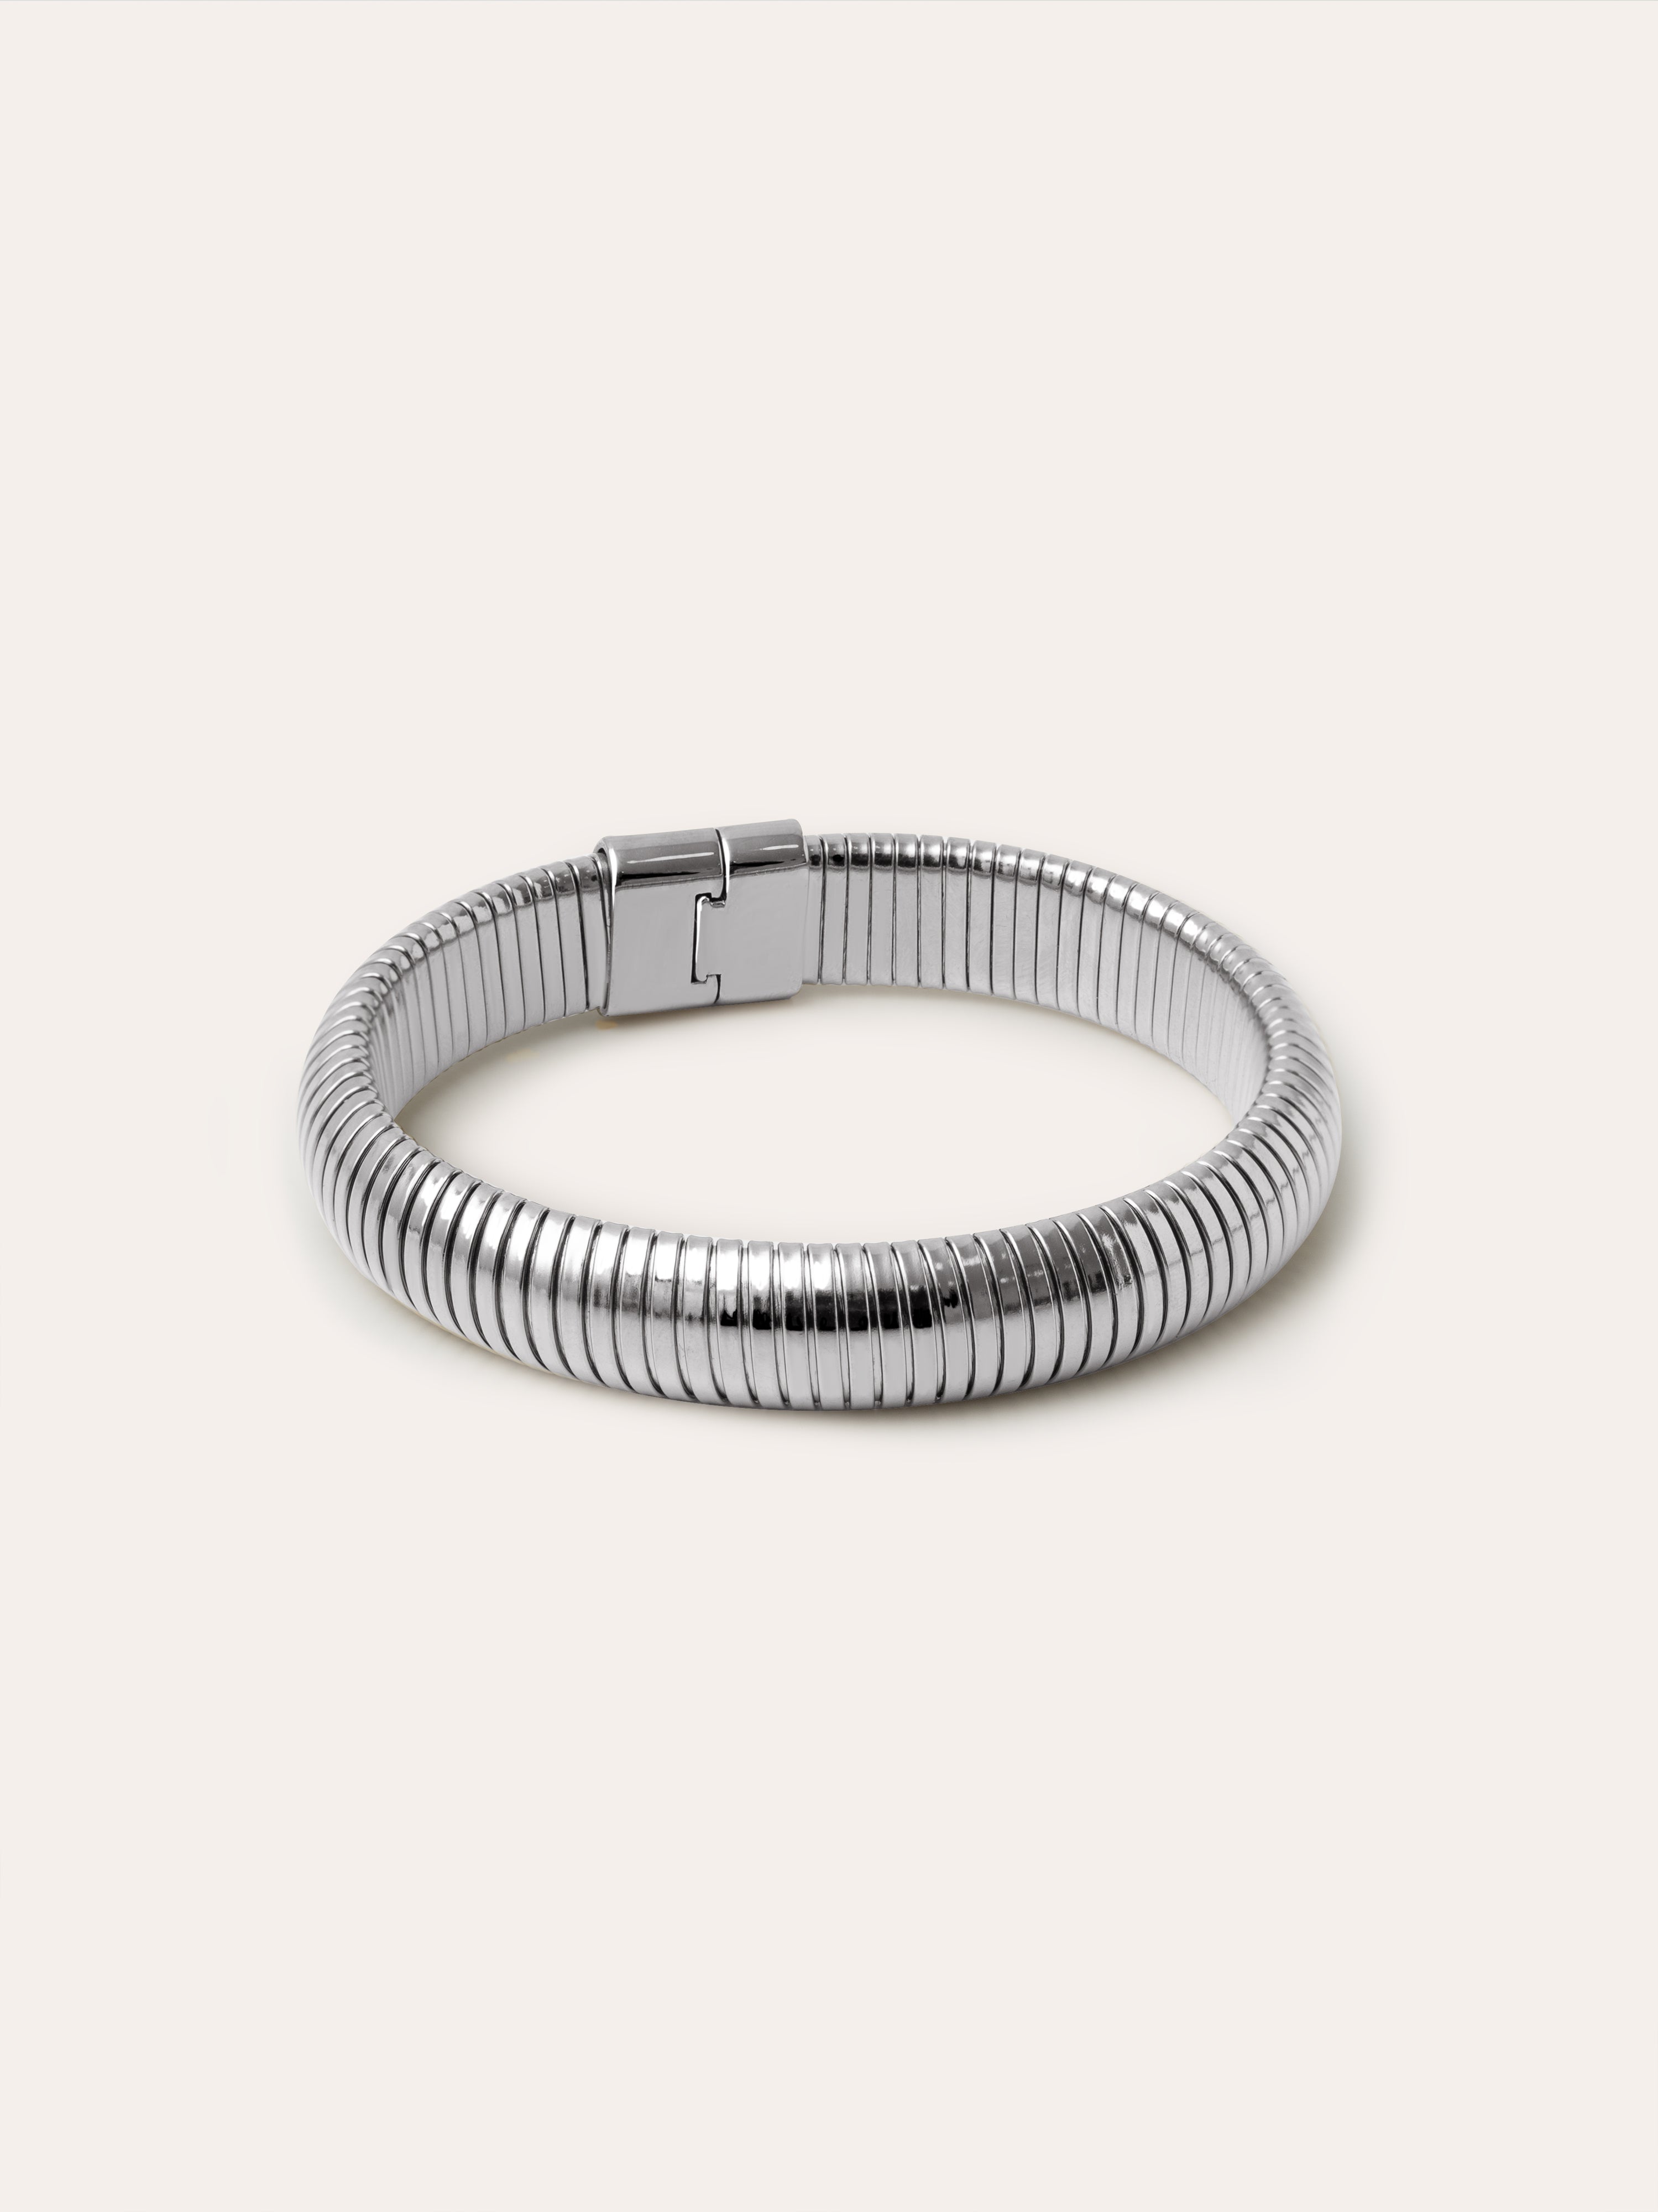  Belt Stainless Steel Bracelet